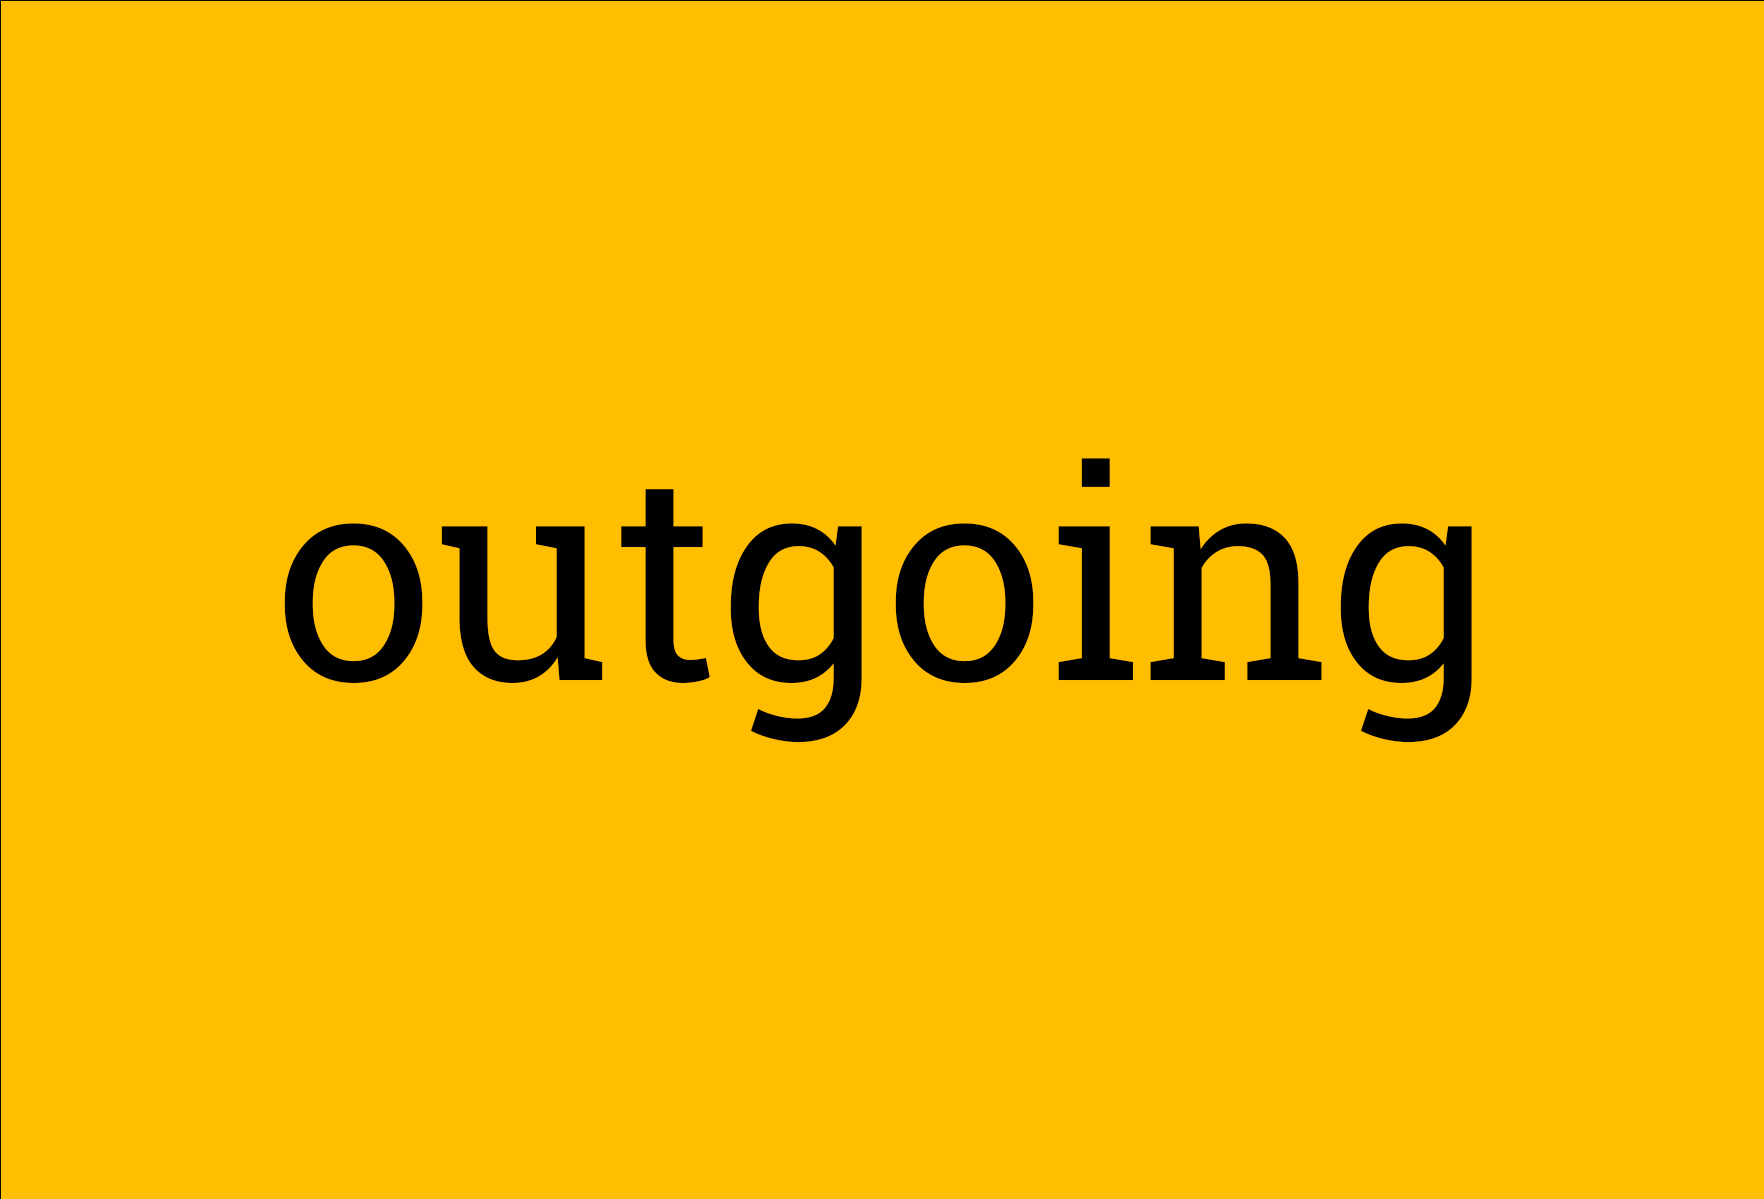 Outgoing